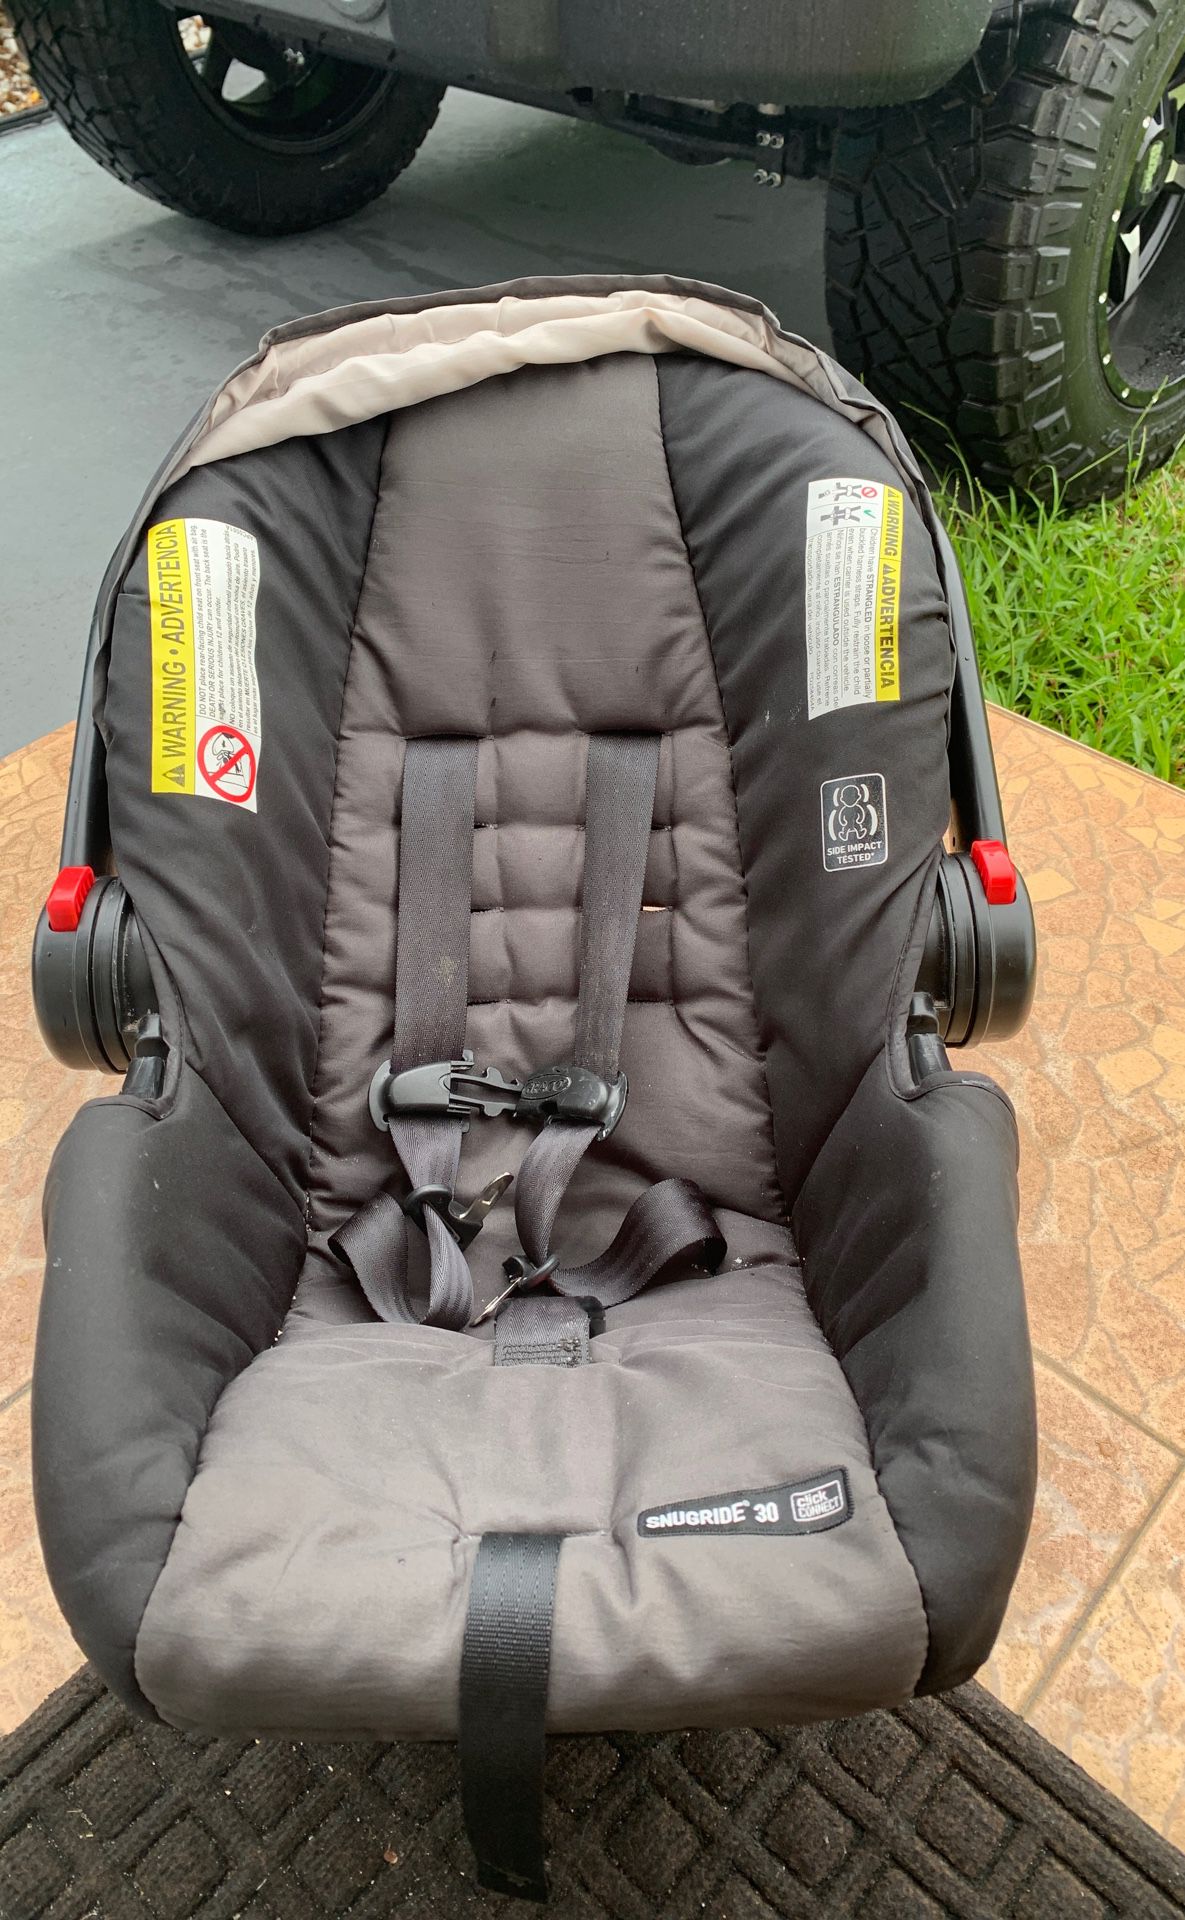 Graco click connect snugride 30 infant car seat